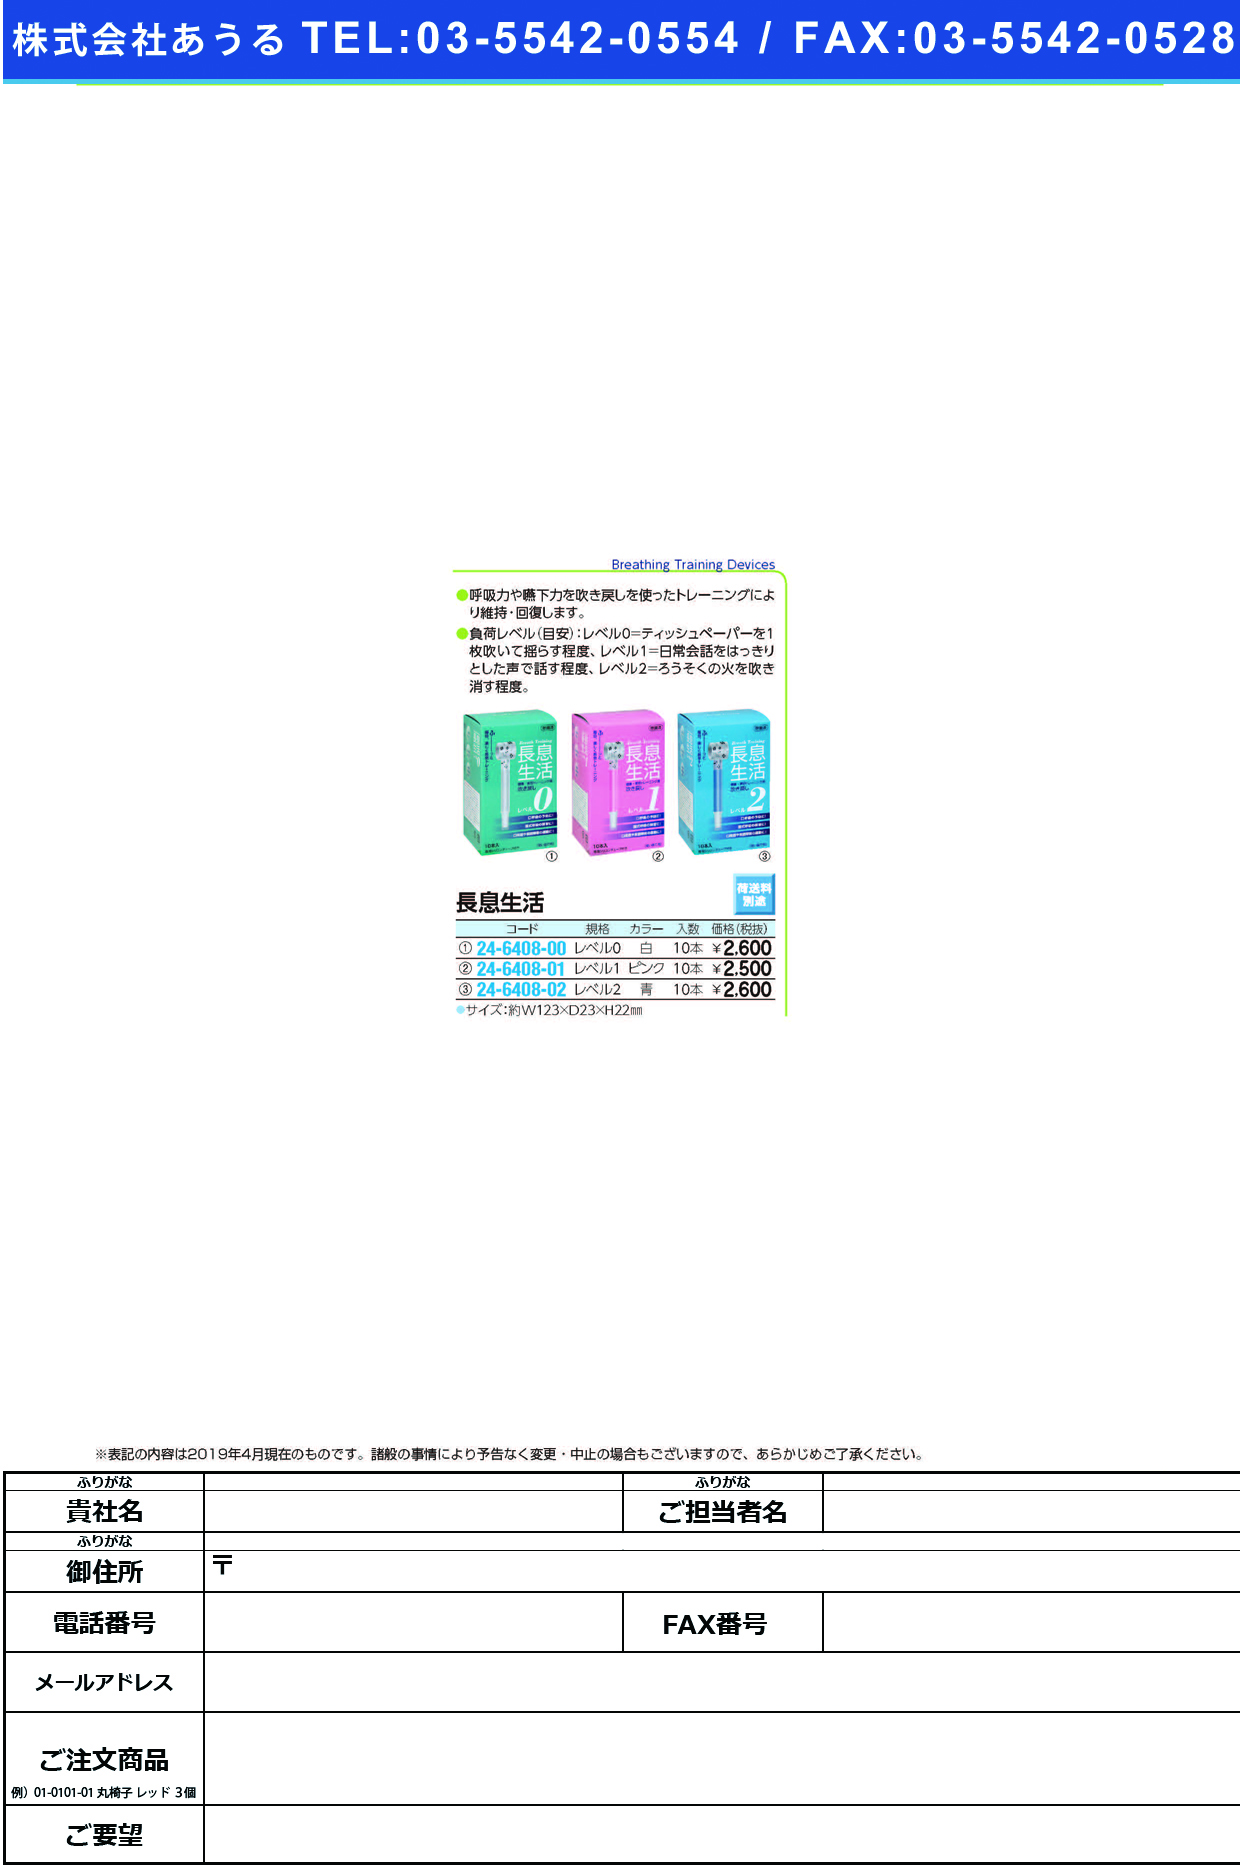 (24-6408-01)長息生活（レベル１）ピンク 10ﾎﾟﾝｲﾘ ﾅｶﾞｲｷｾｲｶﾂ(ﾚﾍﾞﾙ1)ﾋﾟﾝｸ【1箱単位】【2019年カタログ商品】